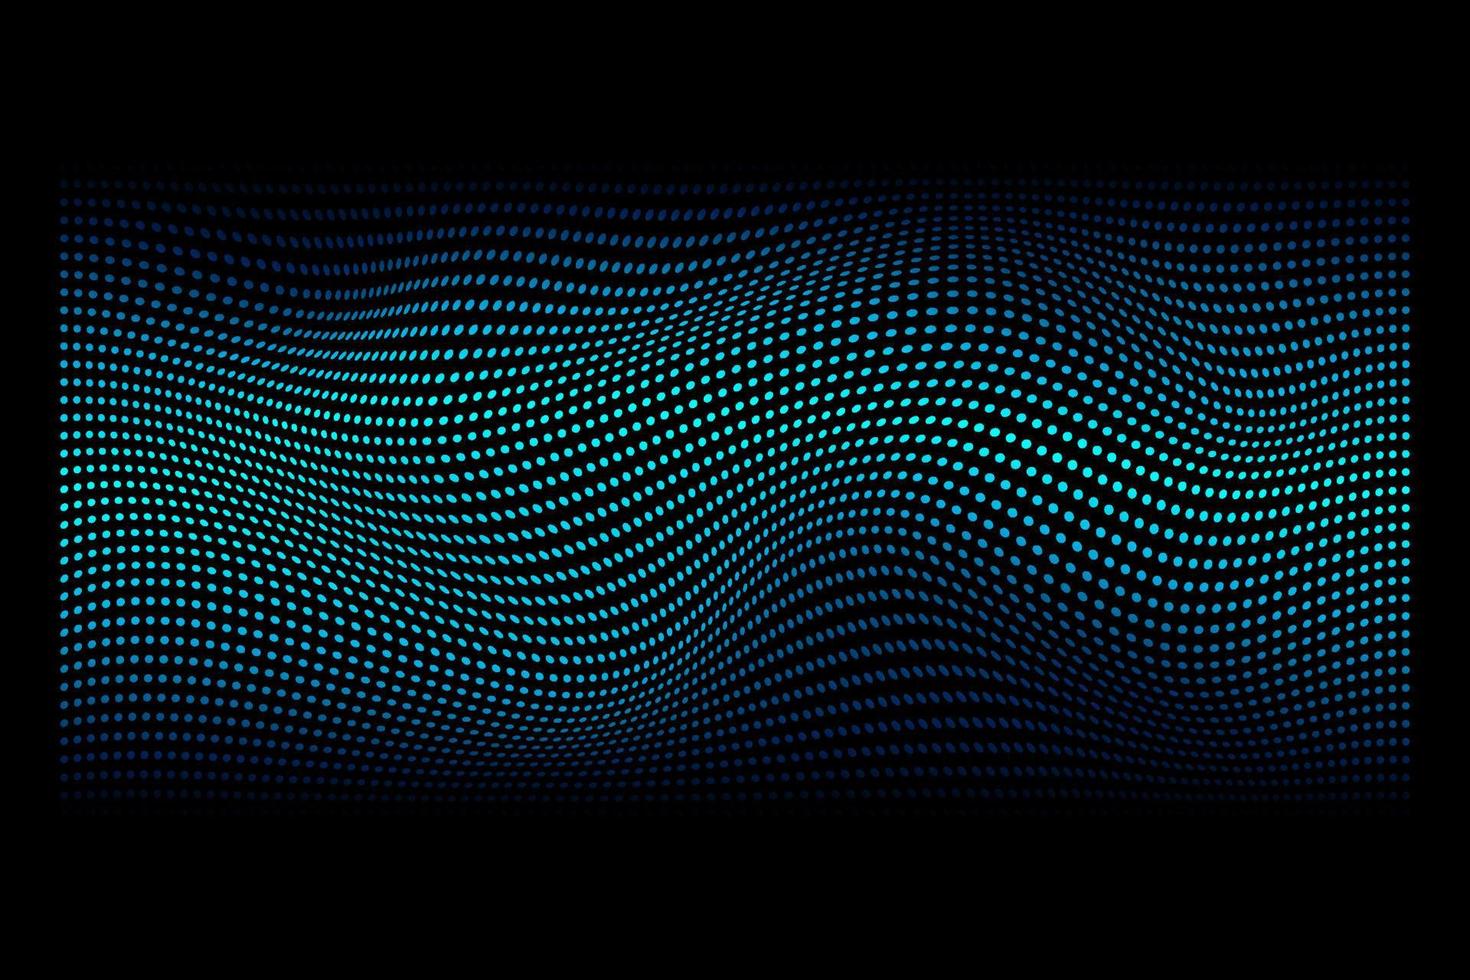 abstrakta prickar partiklar flödar vågigt blått grönt ljus isolerad på svart bakgrund. vektor illustration designelement i begreppet teknik, energi, vetenskap, musik.